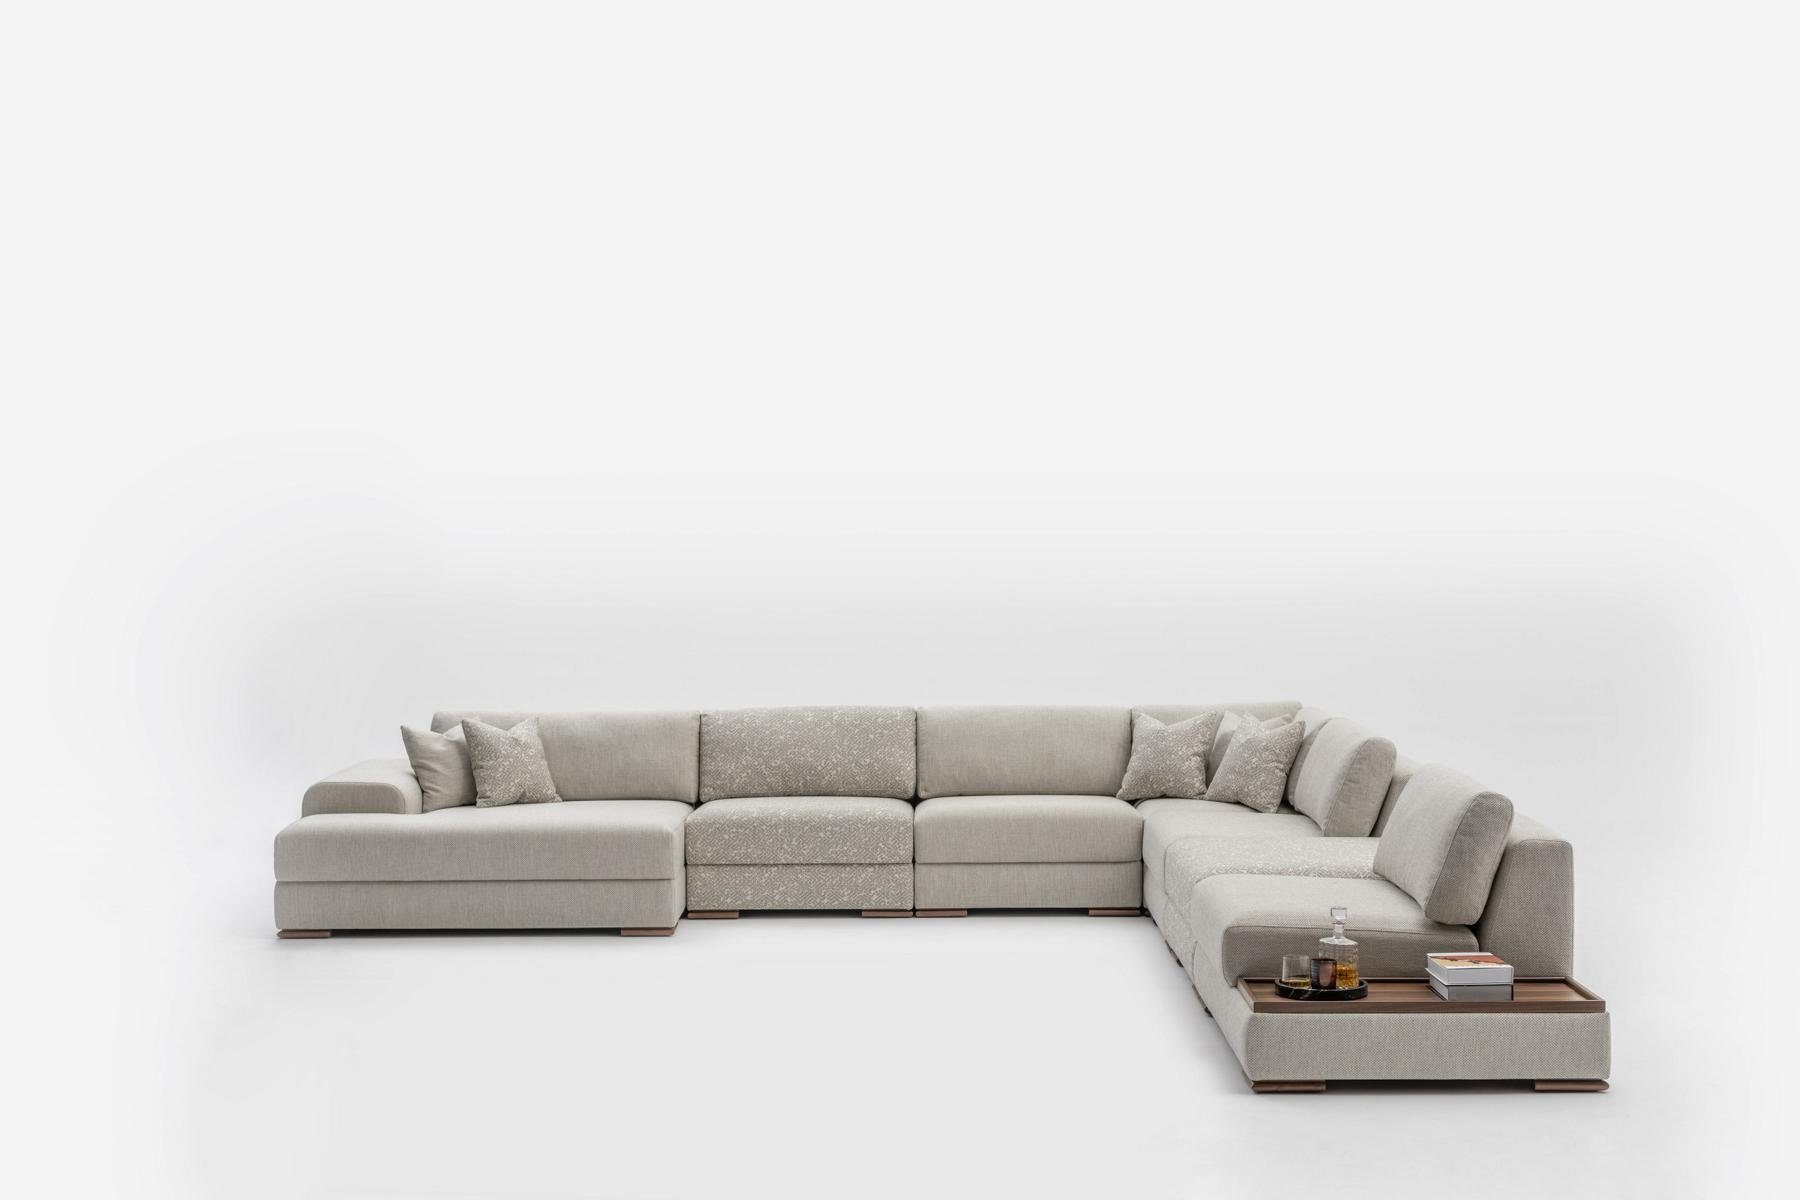 JVmoebel Ecksofa Modern Sofa U Form Design Möbel Luxus Wohnzimmer Grau, Made in Europe